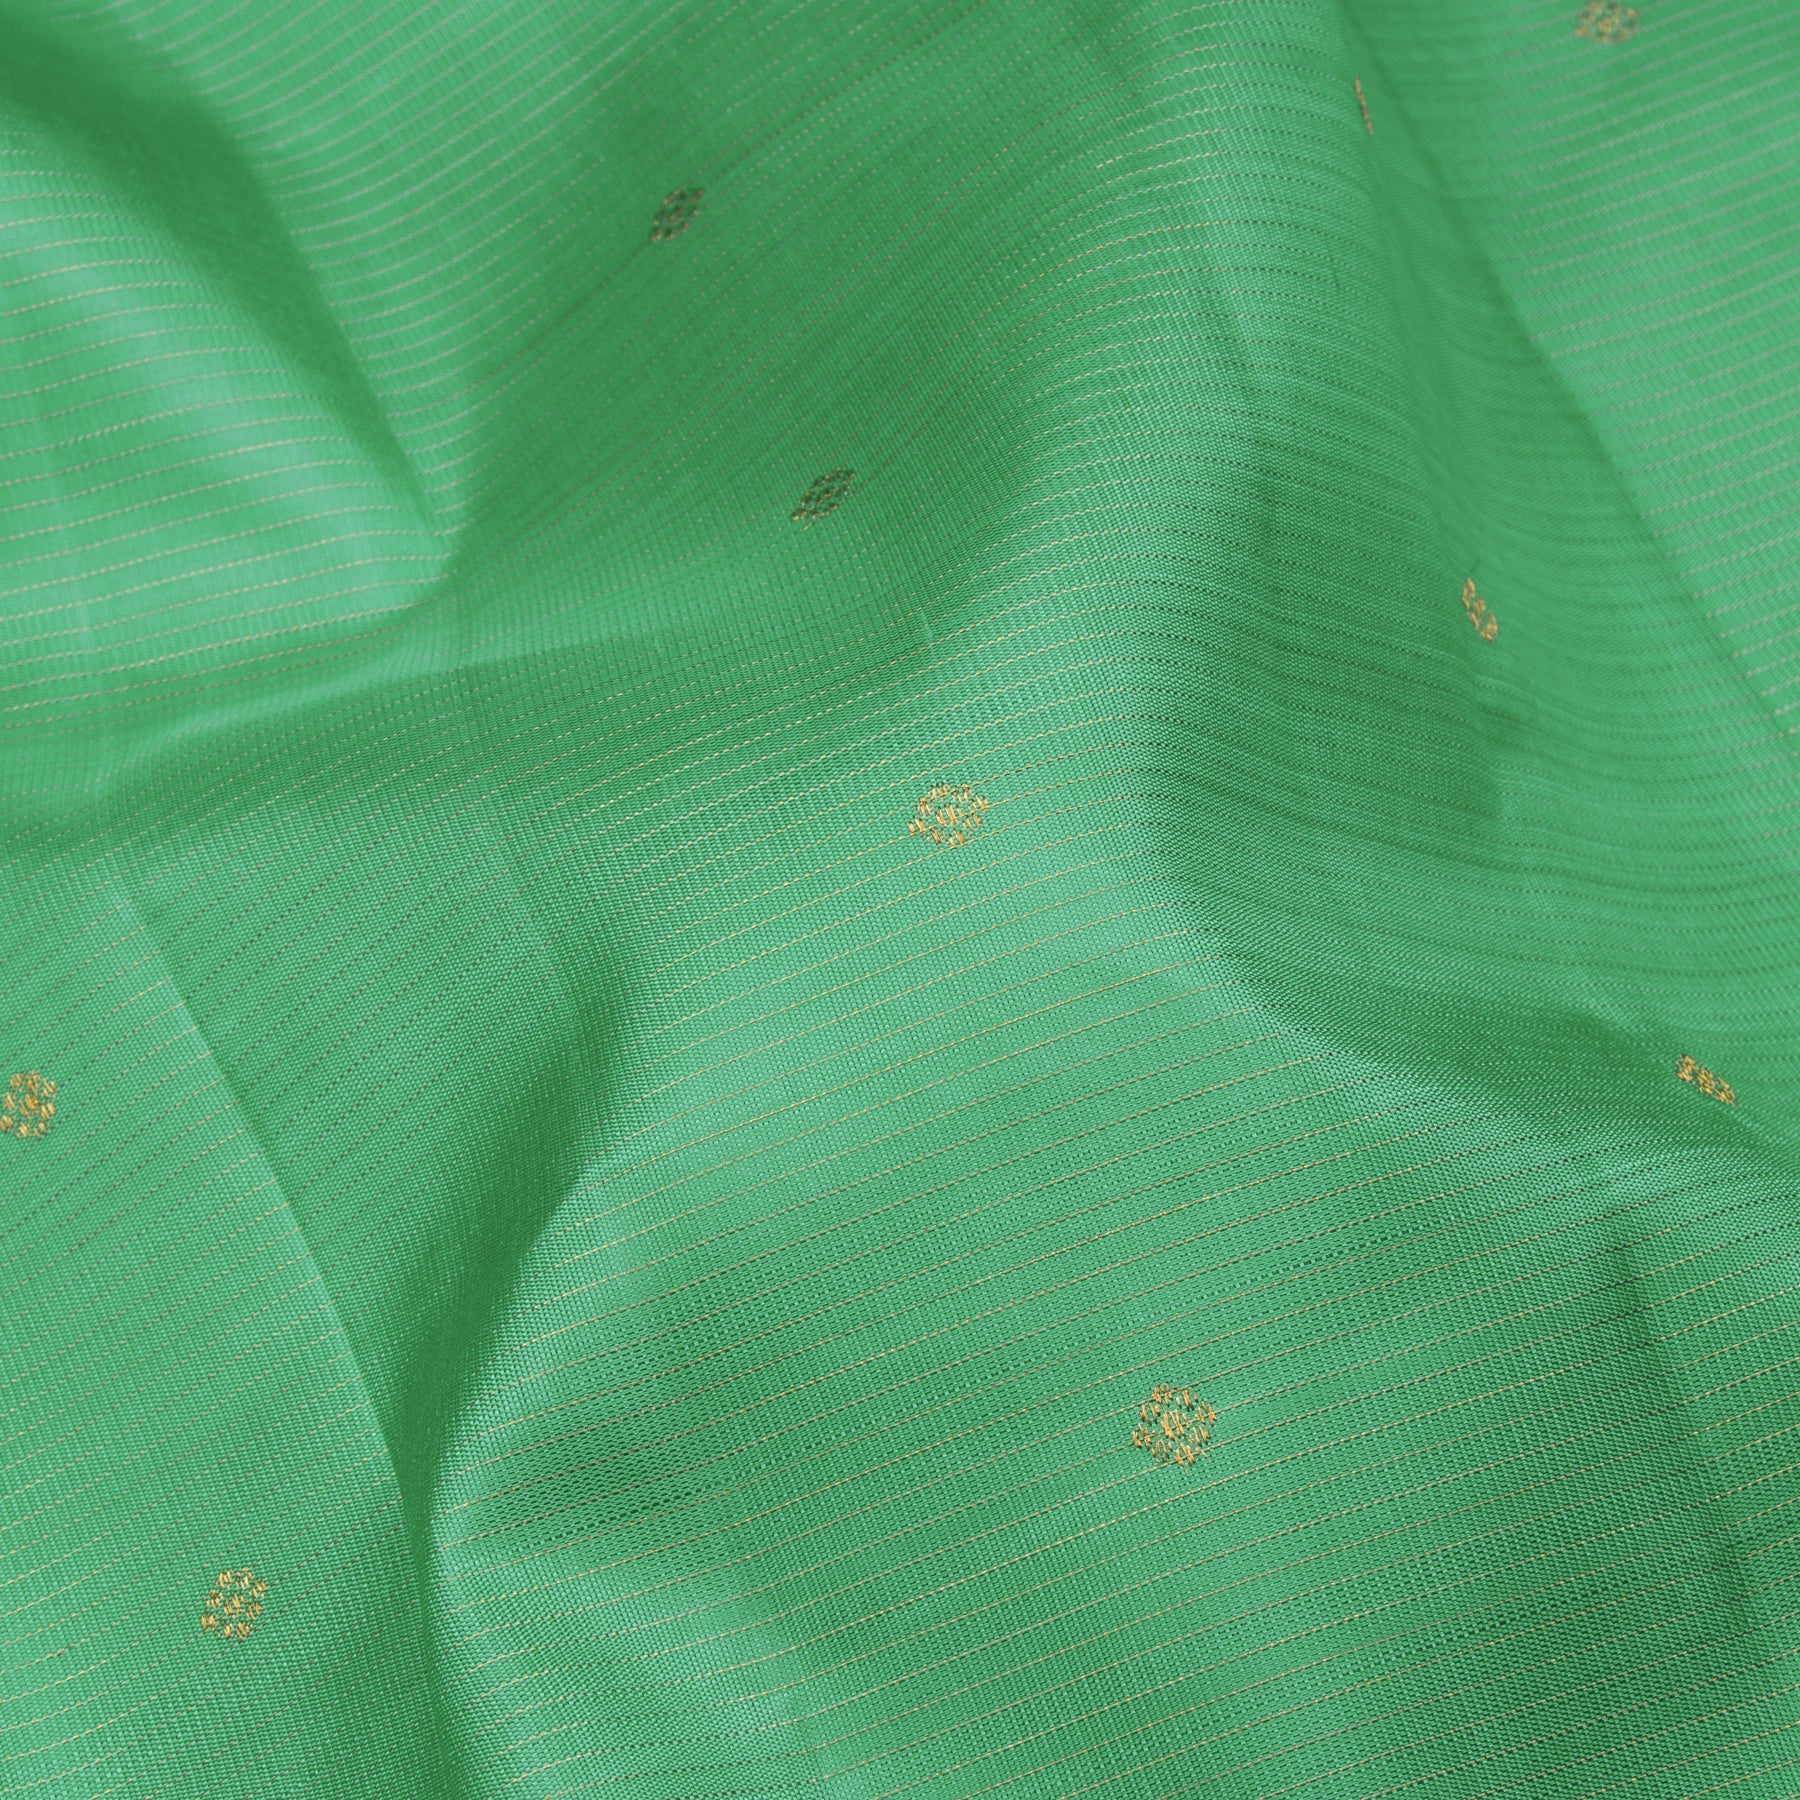 Kanakavalli Kanjivaram Silk Sari 23-110-HS001-12252 - Fabric View